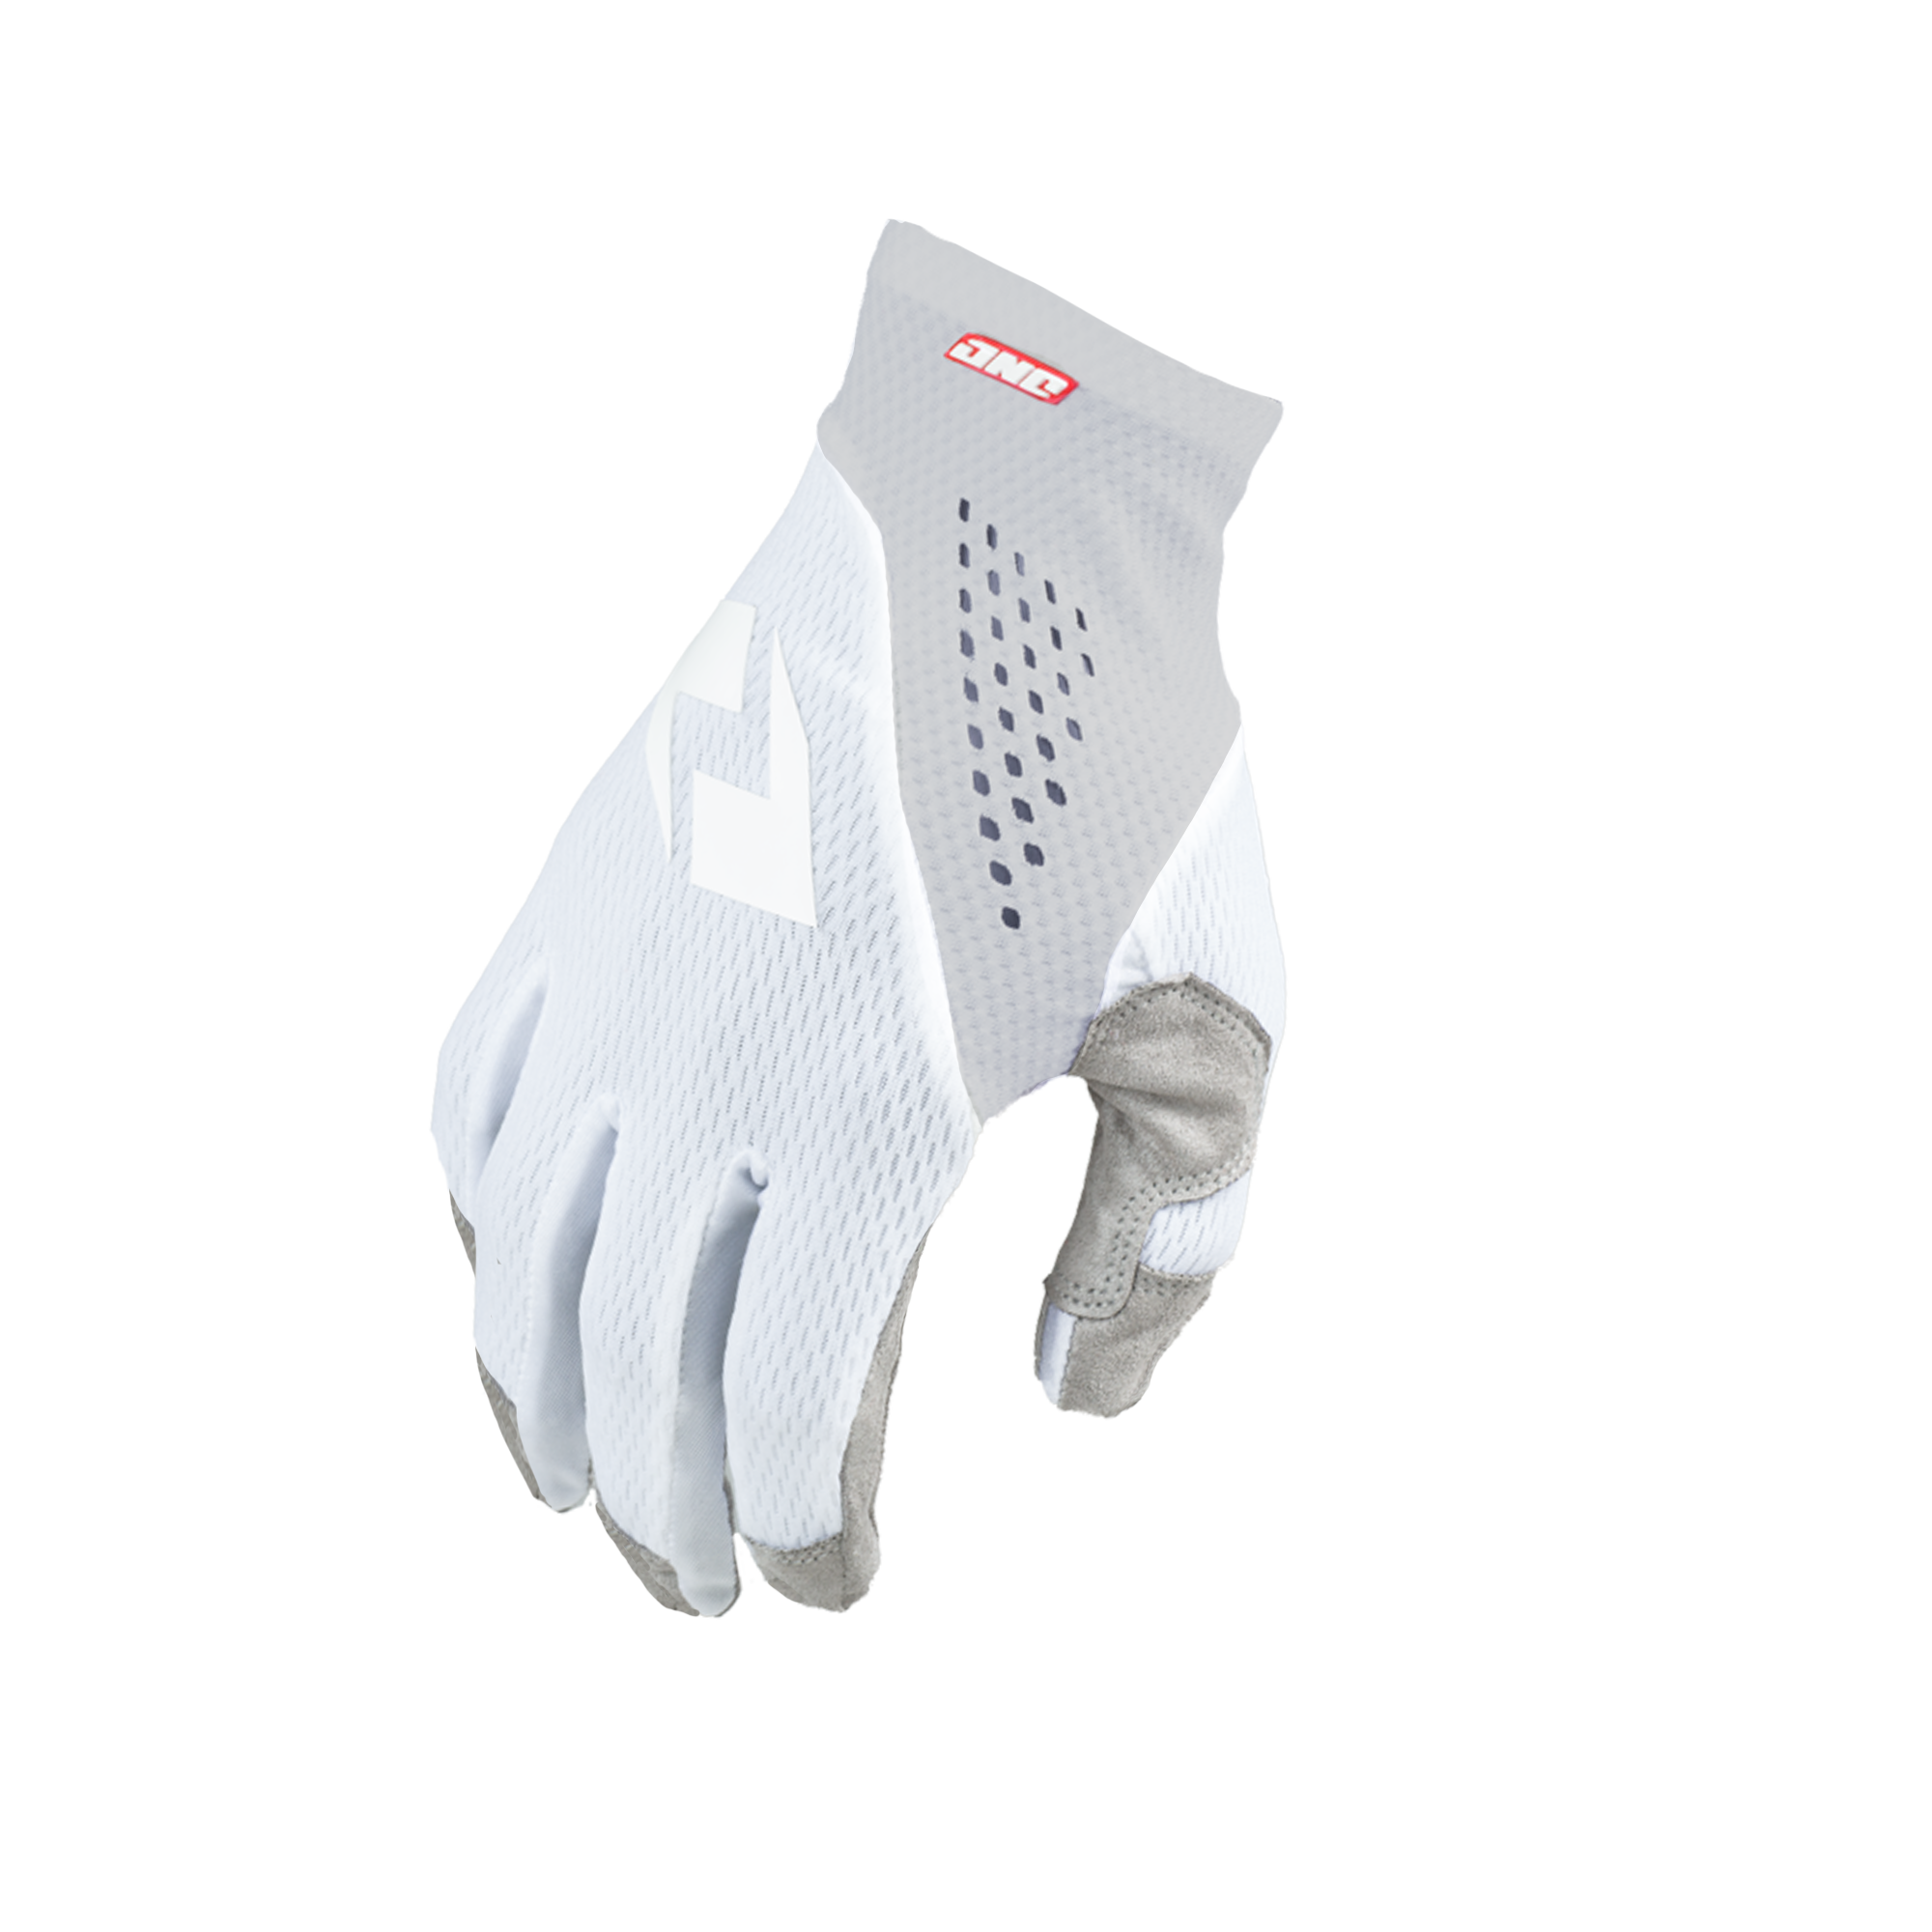 V-197 Glove - ICE WHITE